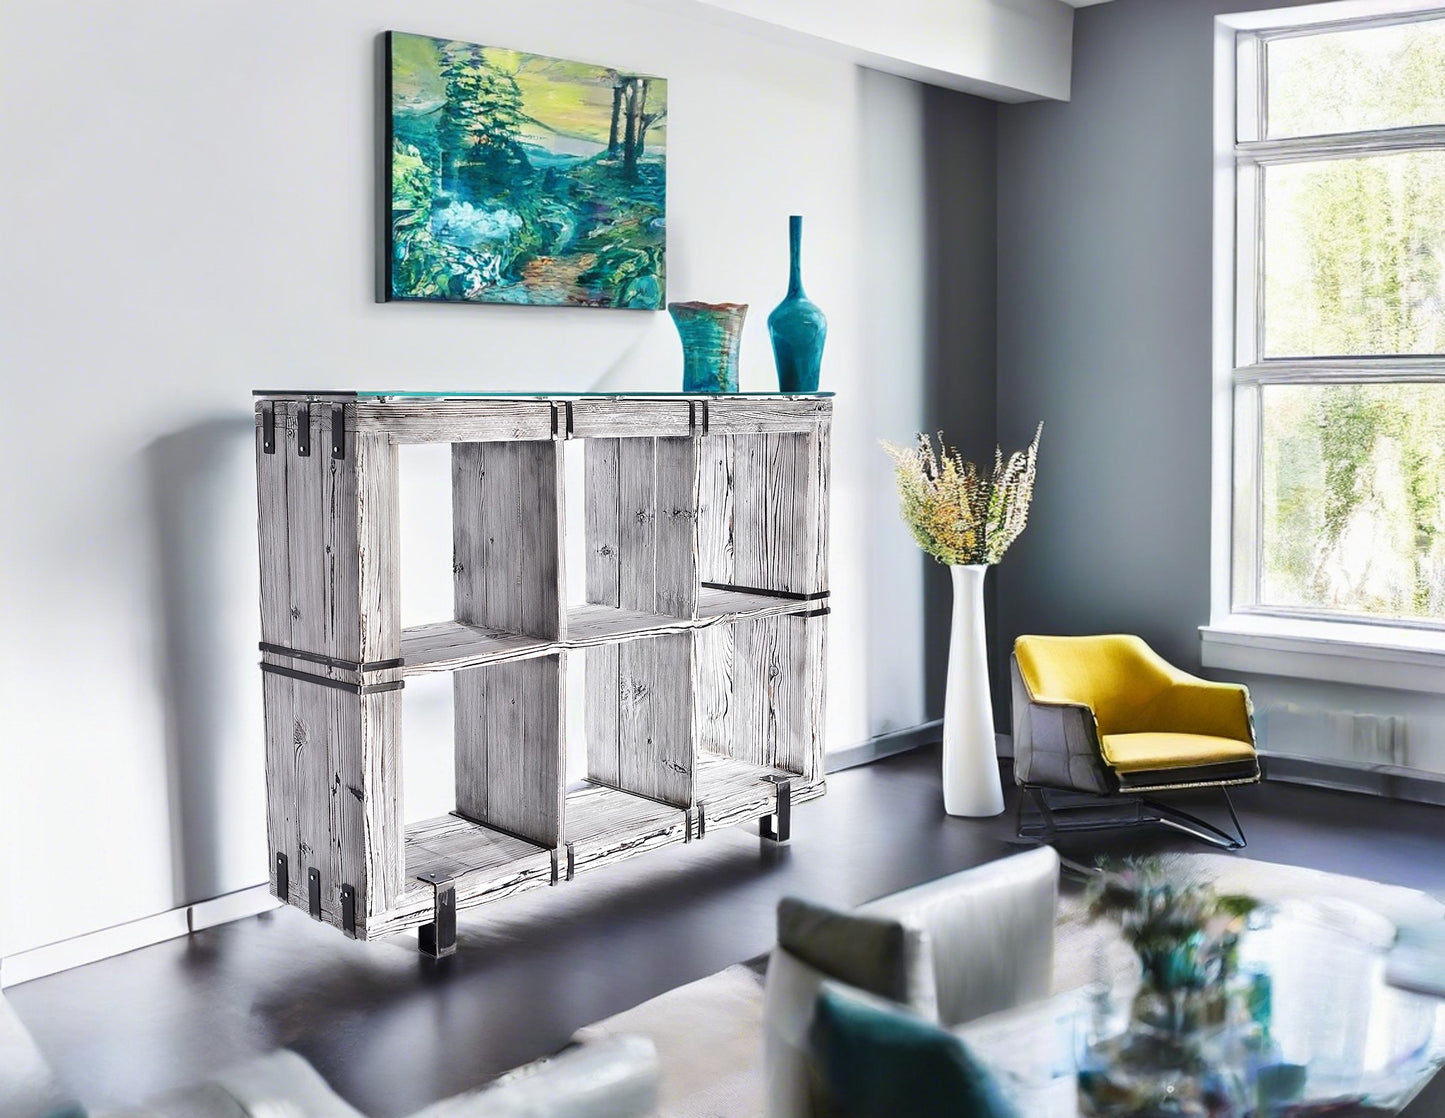 CHYRKA® Commode BORYSLAW (120-180 x 130 cm) meuble buffet bois massif meuble TV loft vintage bar design industriel fait main bois verre métal